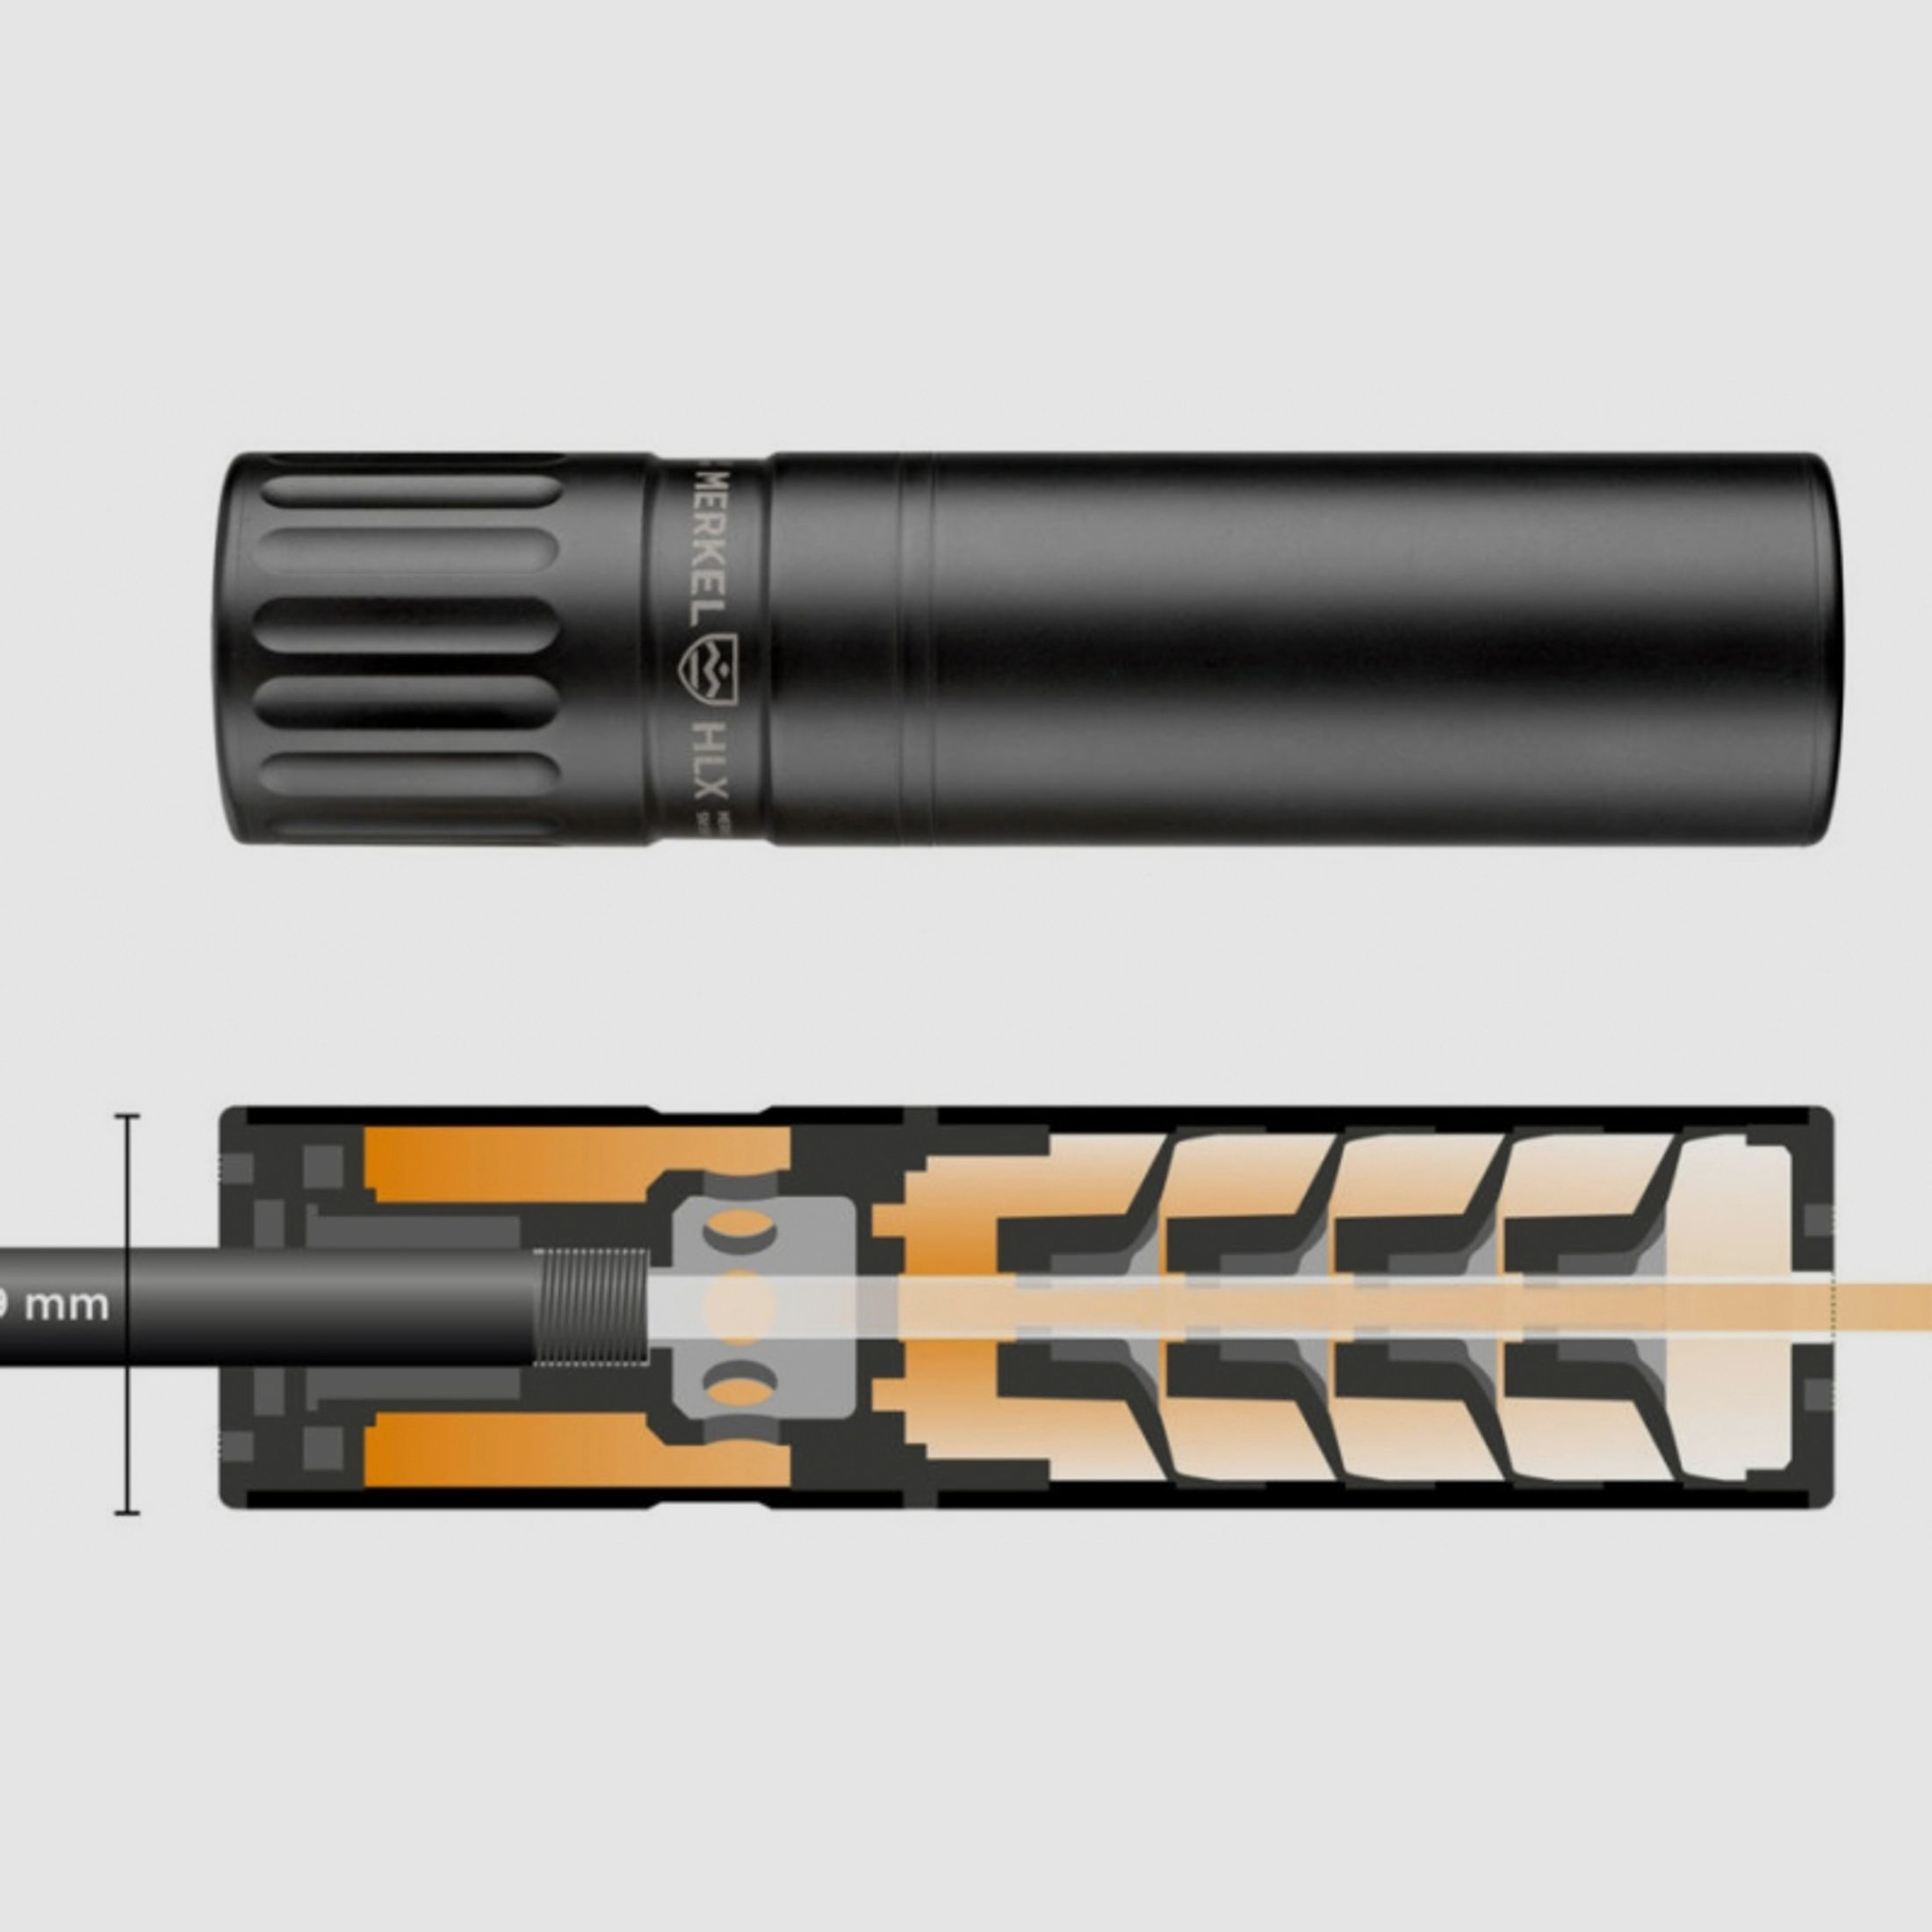 Merkel Schalldämpfer HLX Suppressor Kaliber 8mmS .338 9,3 mm B&T 8x57 8x60 8x64 8x68 etc